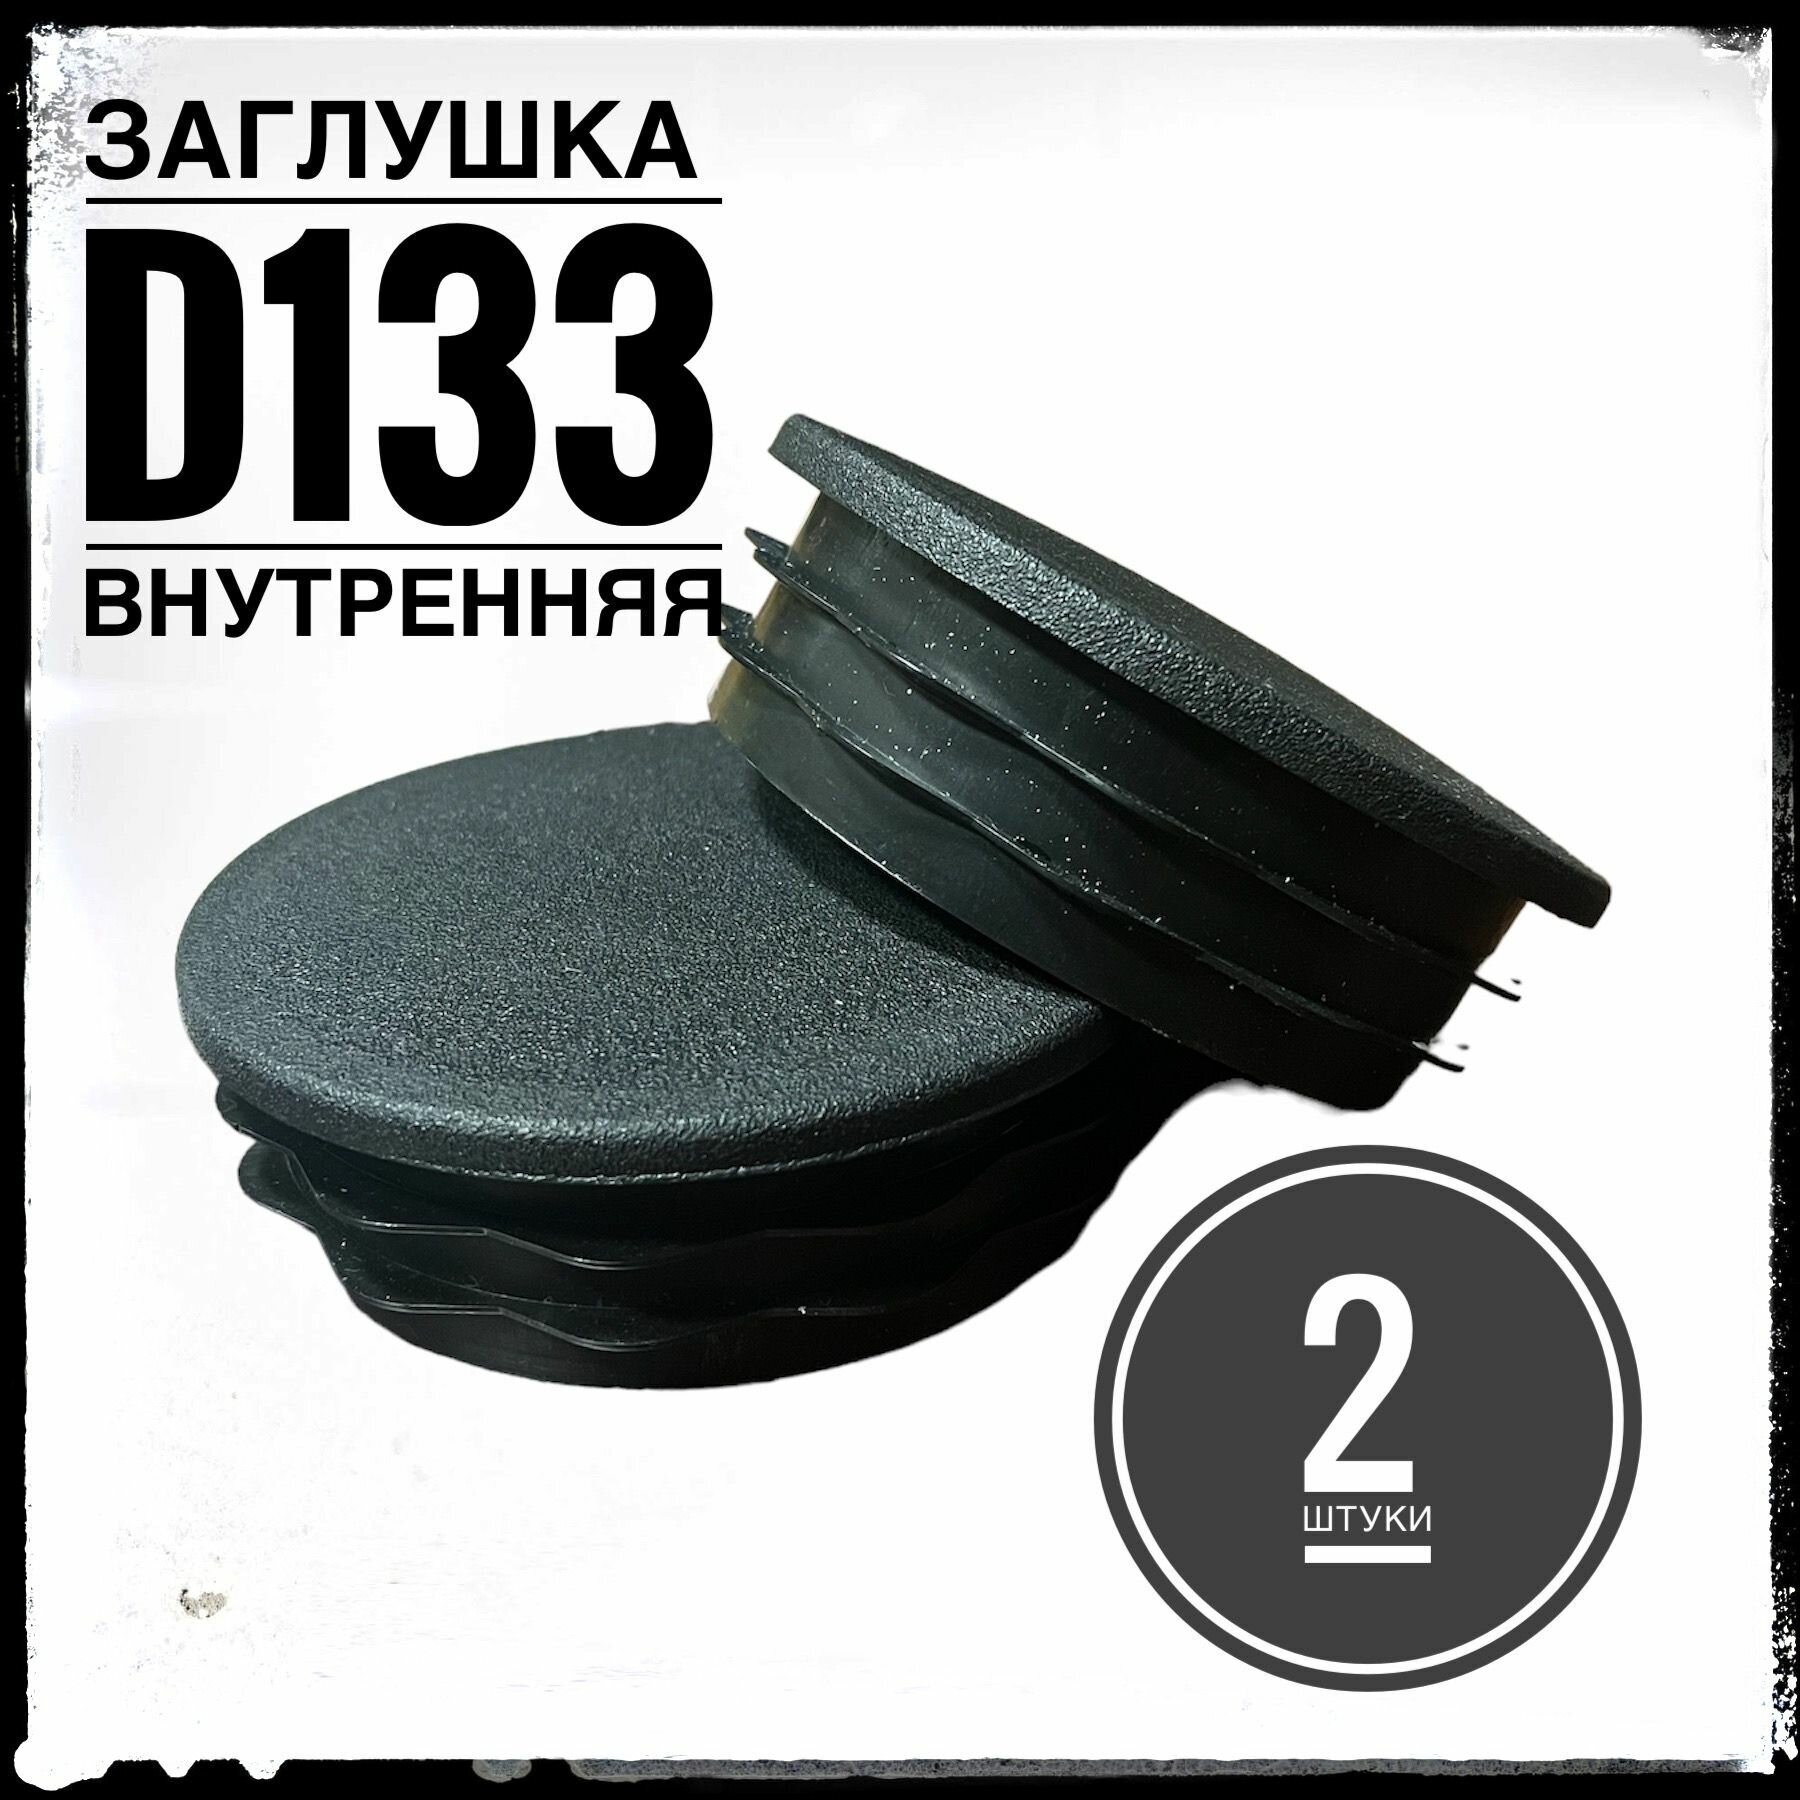 Заглушка пластиковая для металлической трубы Д133 (2 штуки)